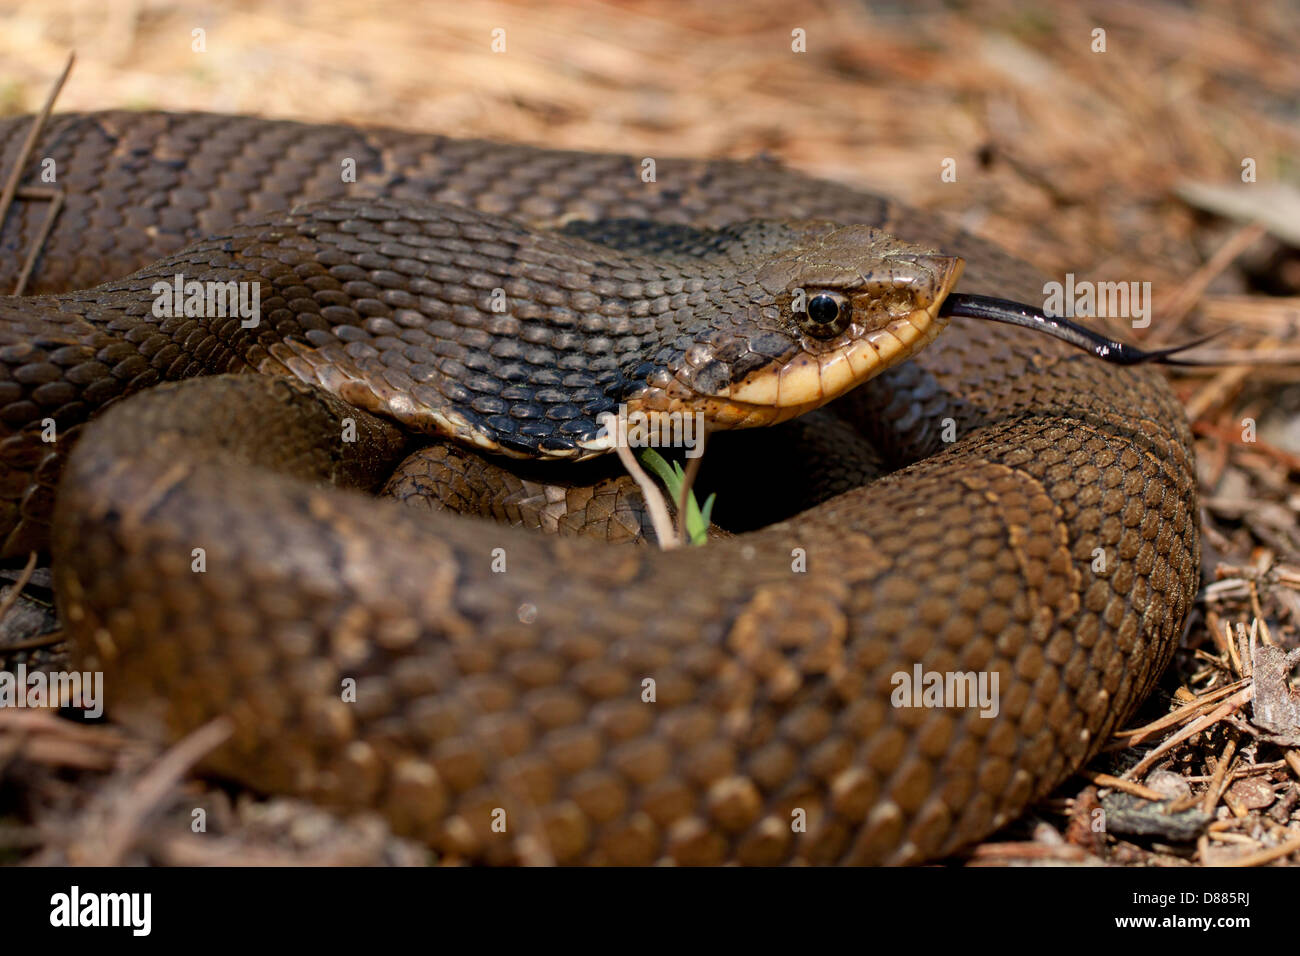 Vista ingrandita di un orientale hognose snake utilizzando la sua lingua biforcuta per gustare l'aria - Heterodon platyrhinos Foto Stock